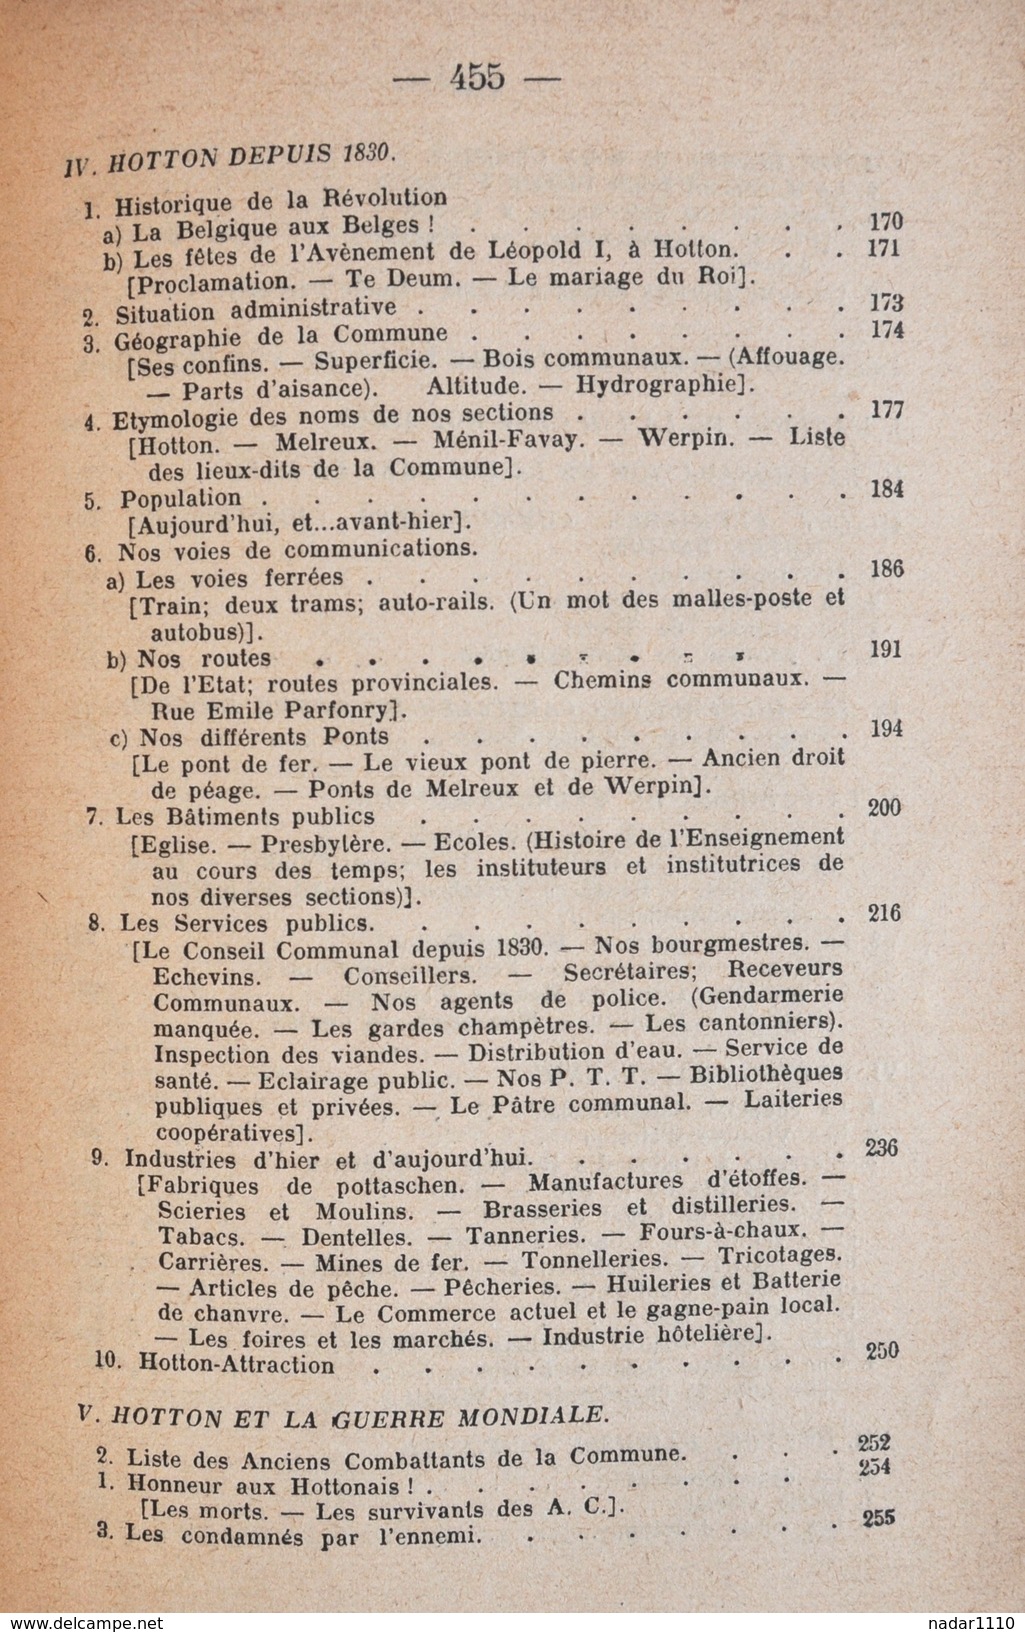 HOTTON à travers les âges - Abbé Edmond Marquet - Casterman, 1930 / La Roche, Durbuy, Melreux, Erpigny, Fanzel, Soy